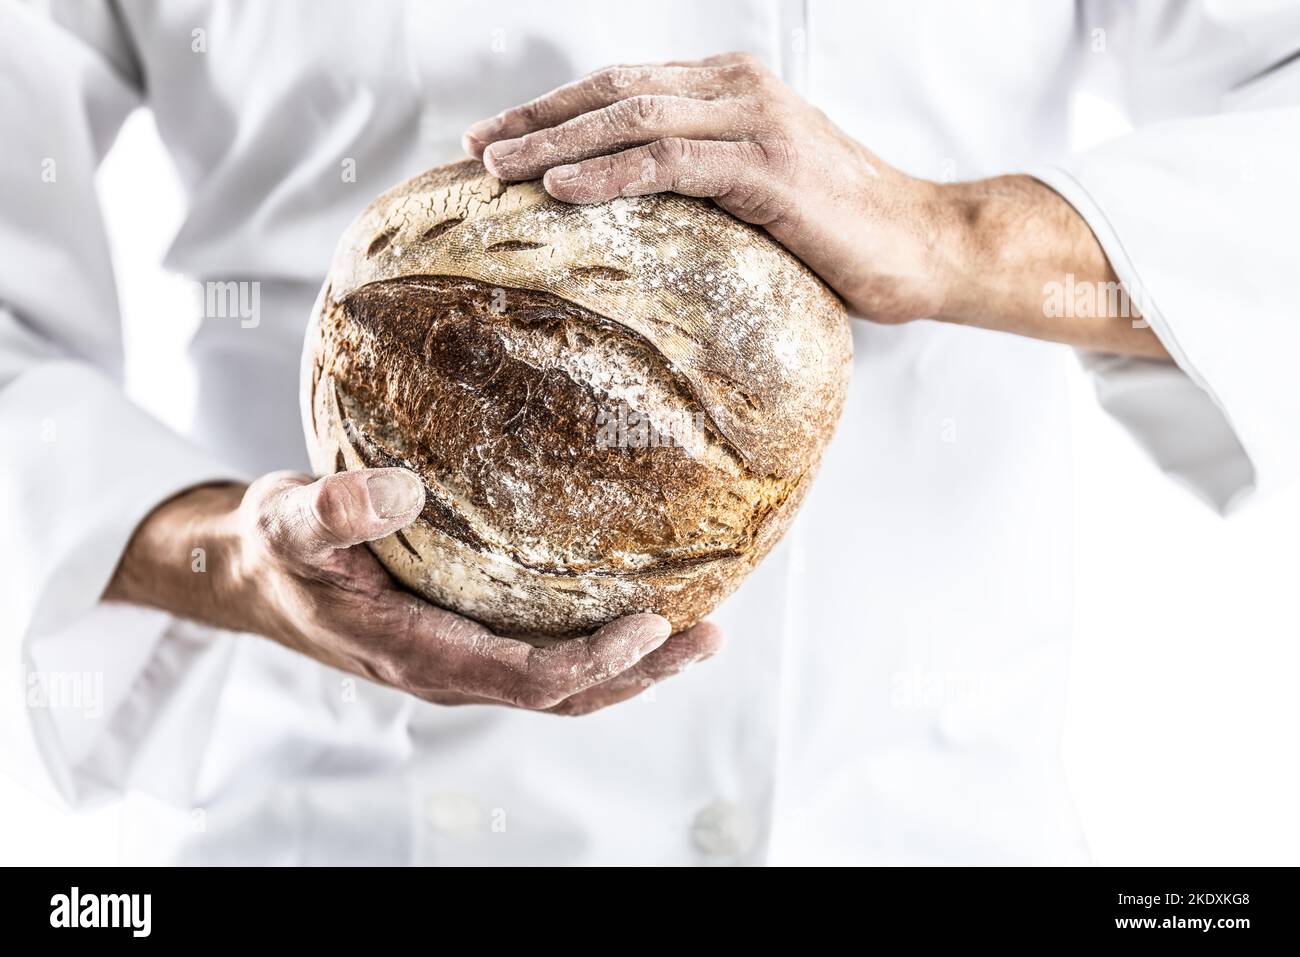 Ein Bäcker in weißer Arbeitskleidung hält einen frischen Laib Brot in der Hand. Stockfoto